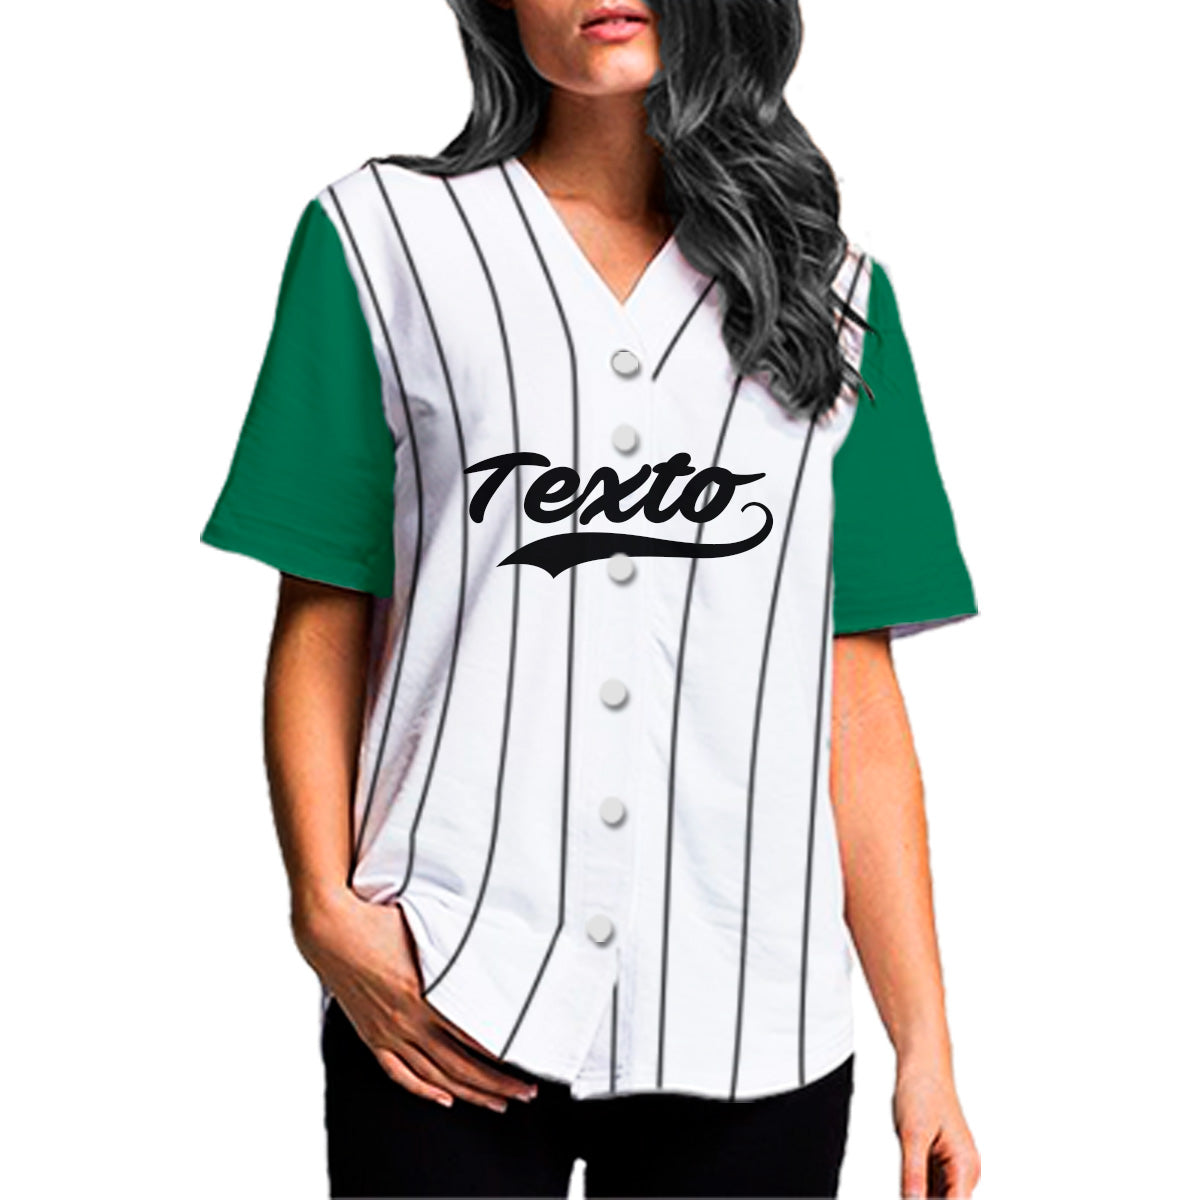 jersey beisbol rayado blanco y verde